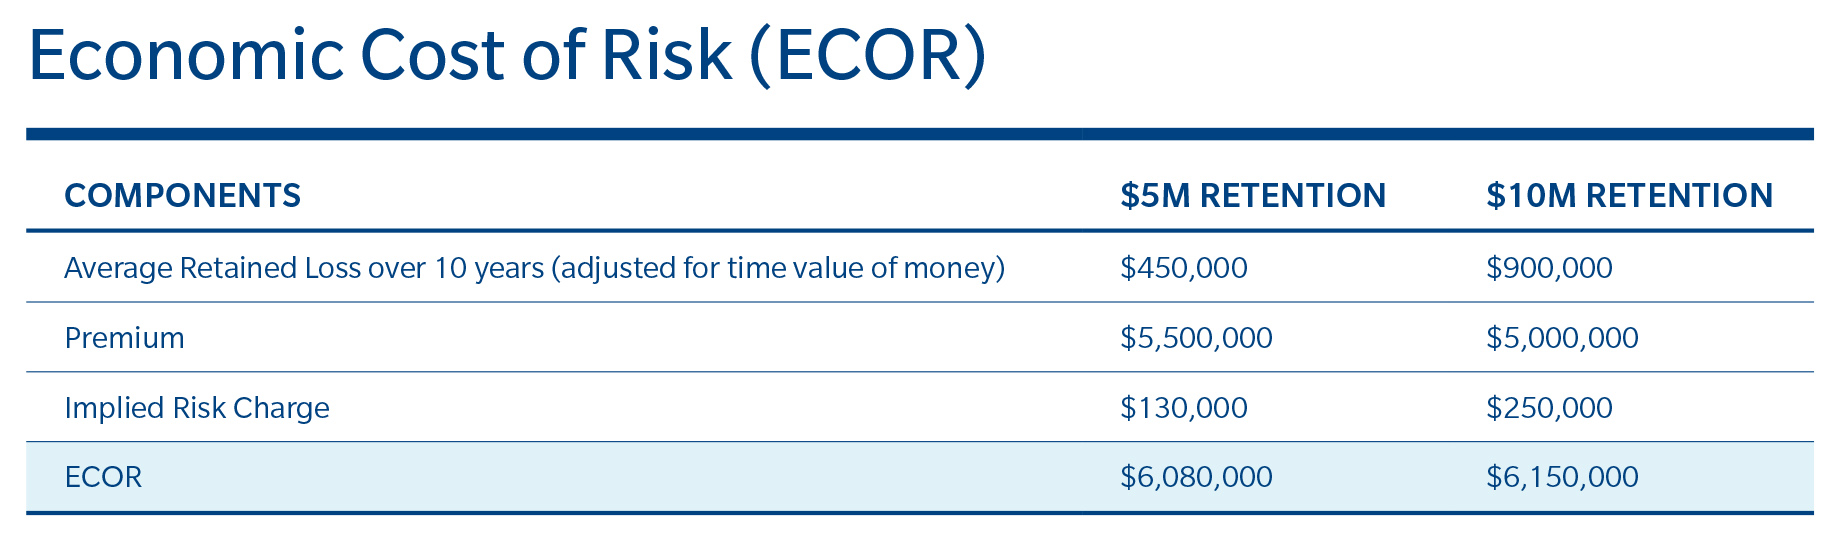 18456 Chart for CFO.com 06-2015_v1